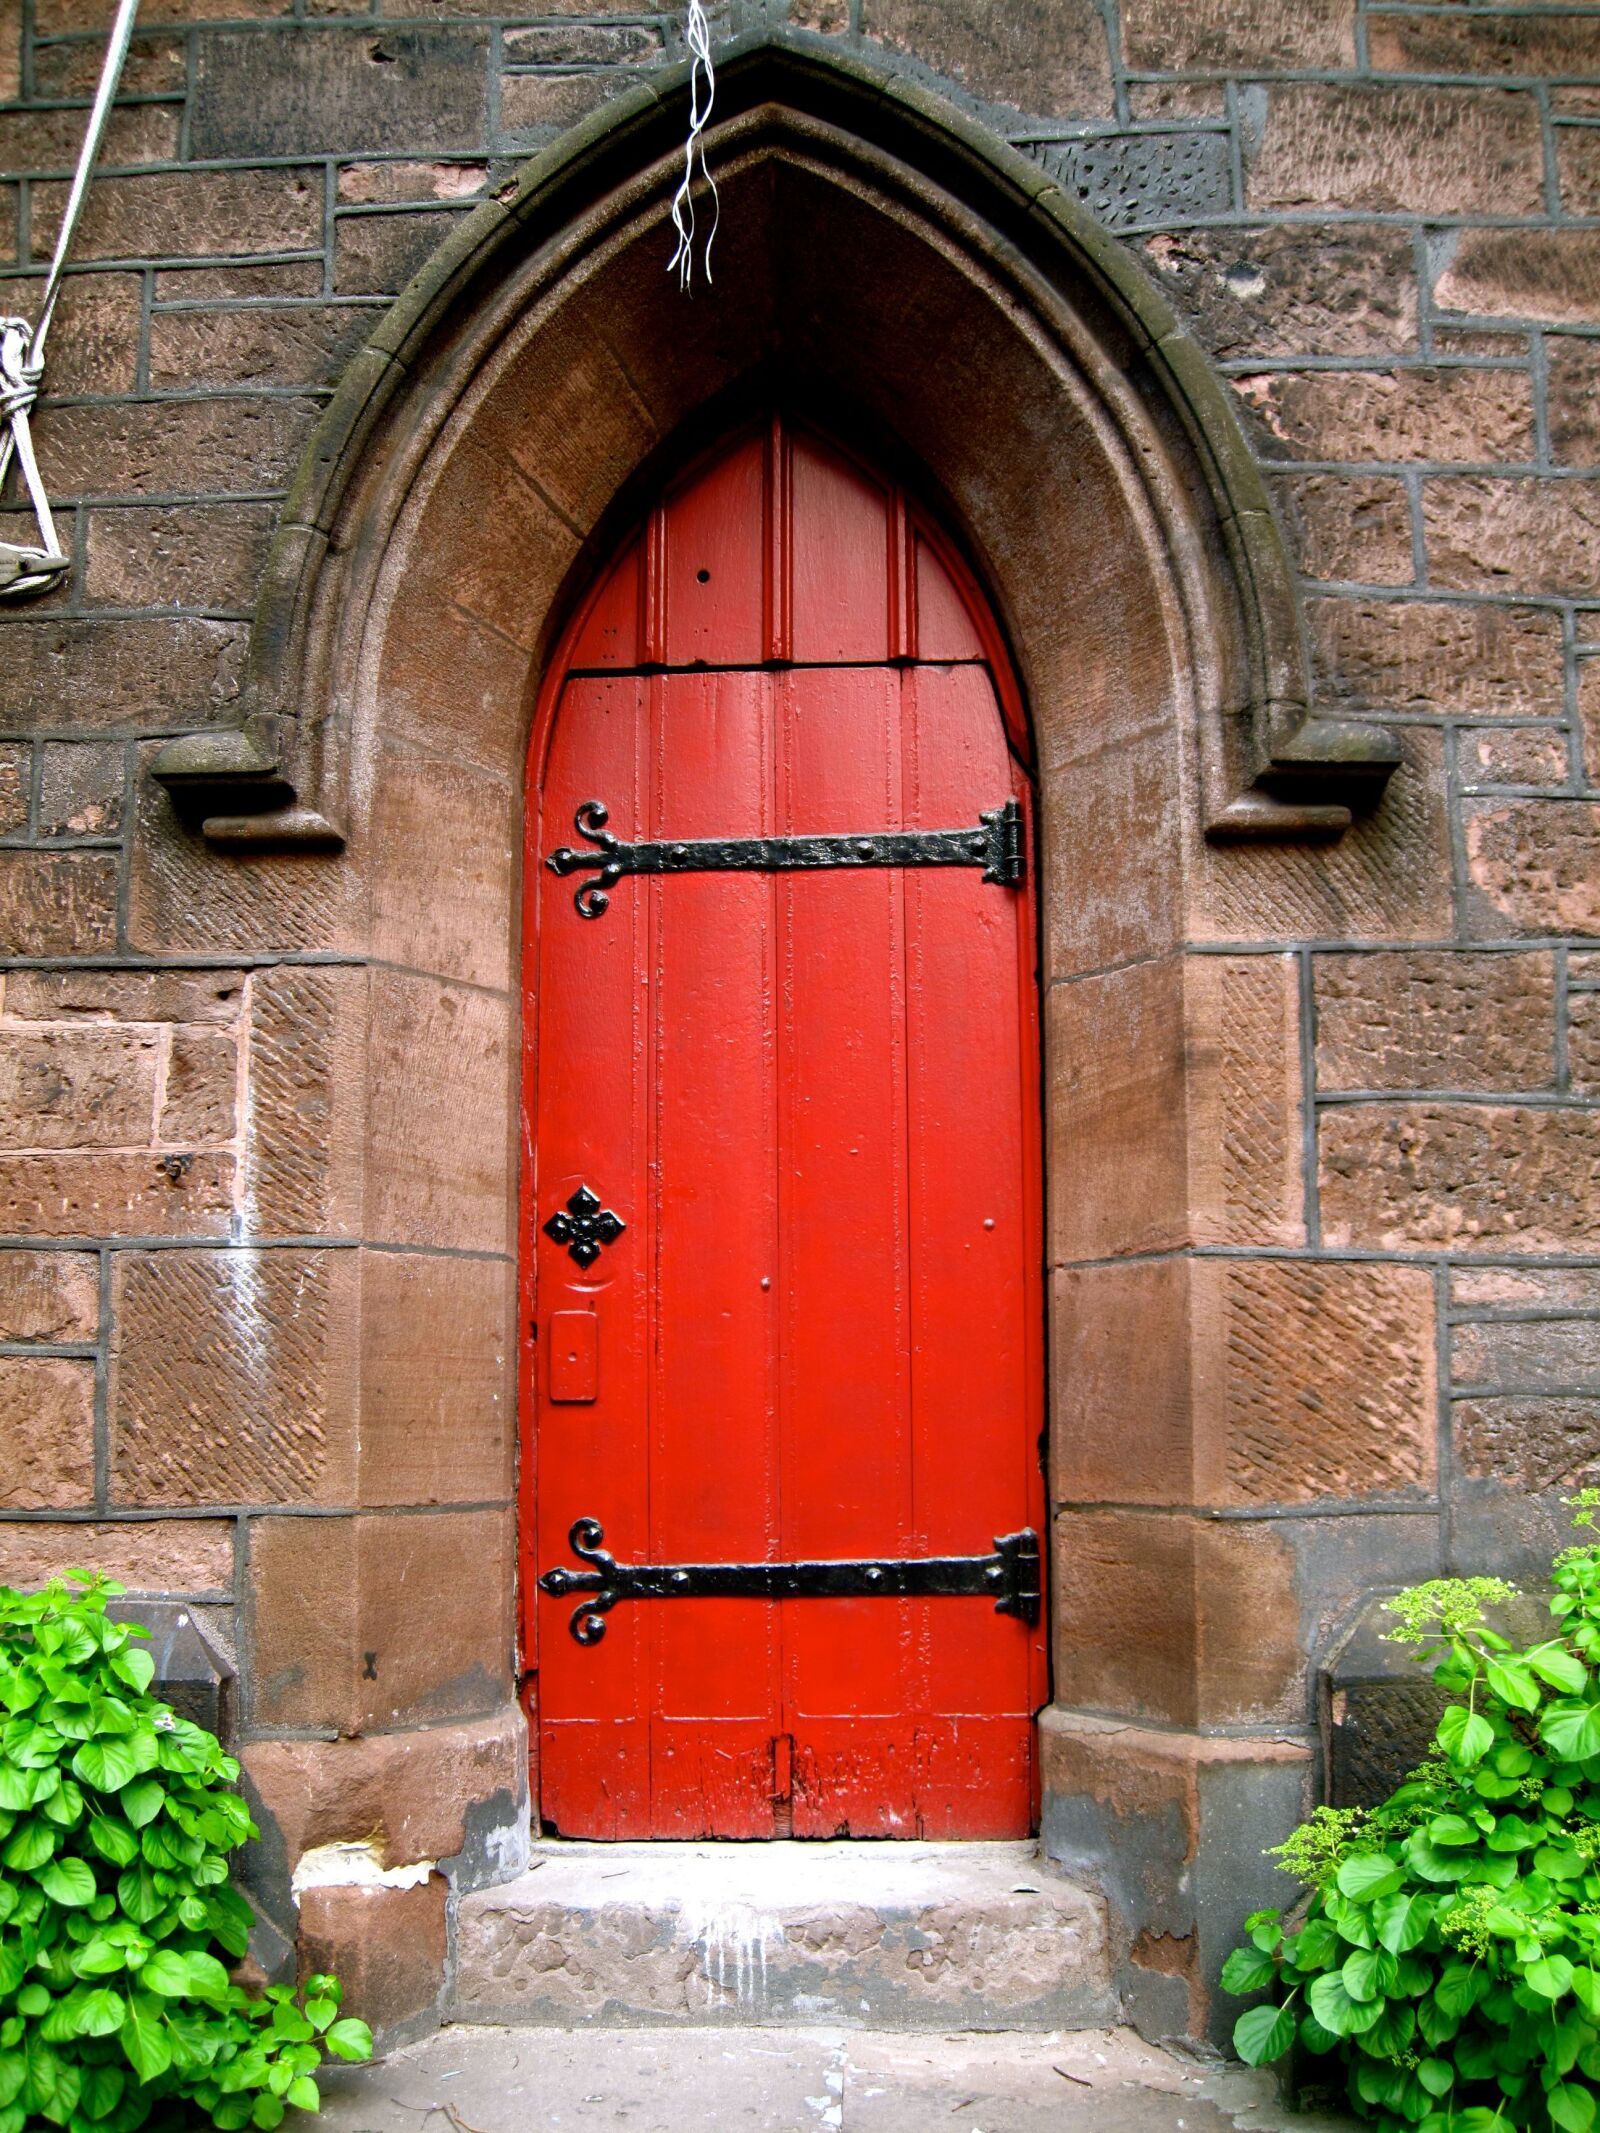 Canon PowerShot SD990 IS (Digital IXUS 980 IS / IXY Digital 3000 IS) sample photo. Door, red, door photography